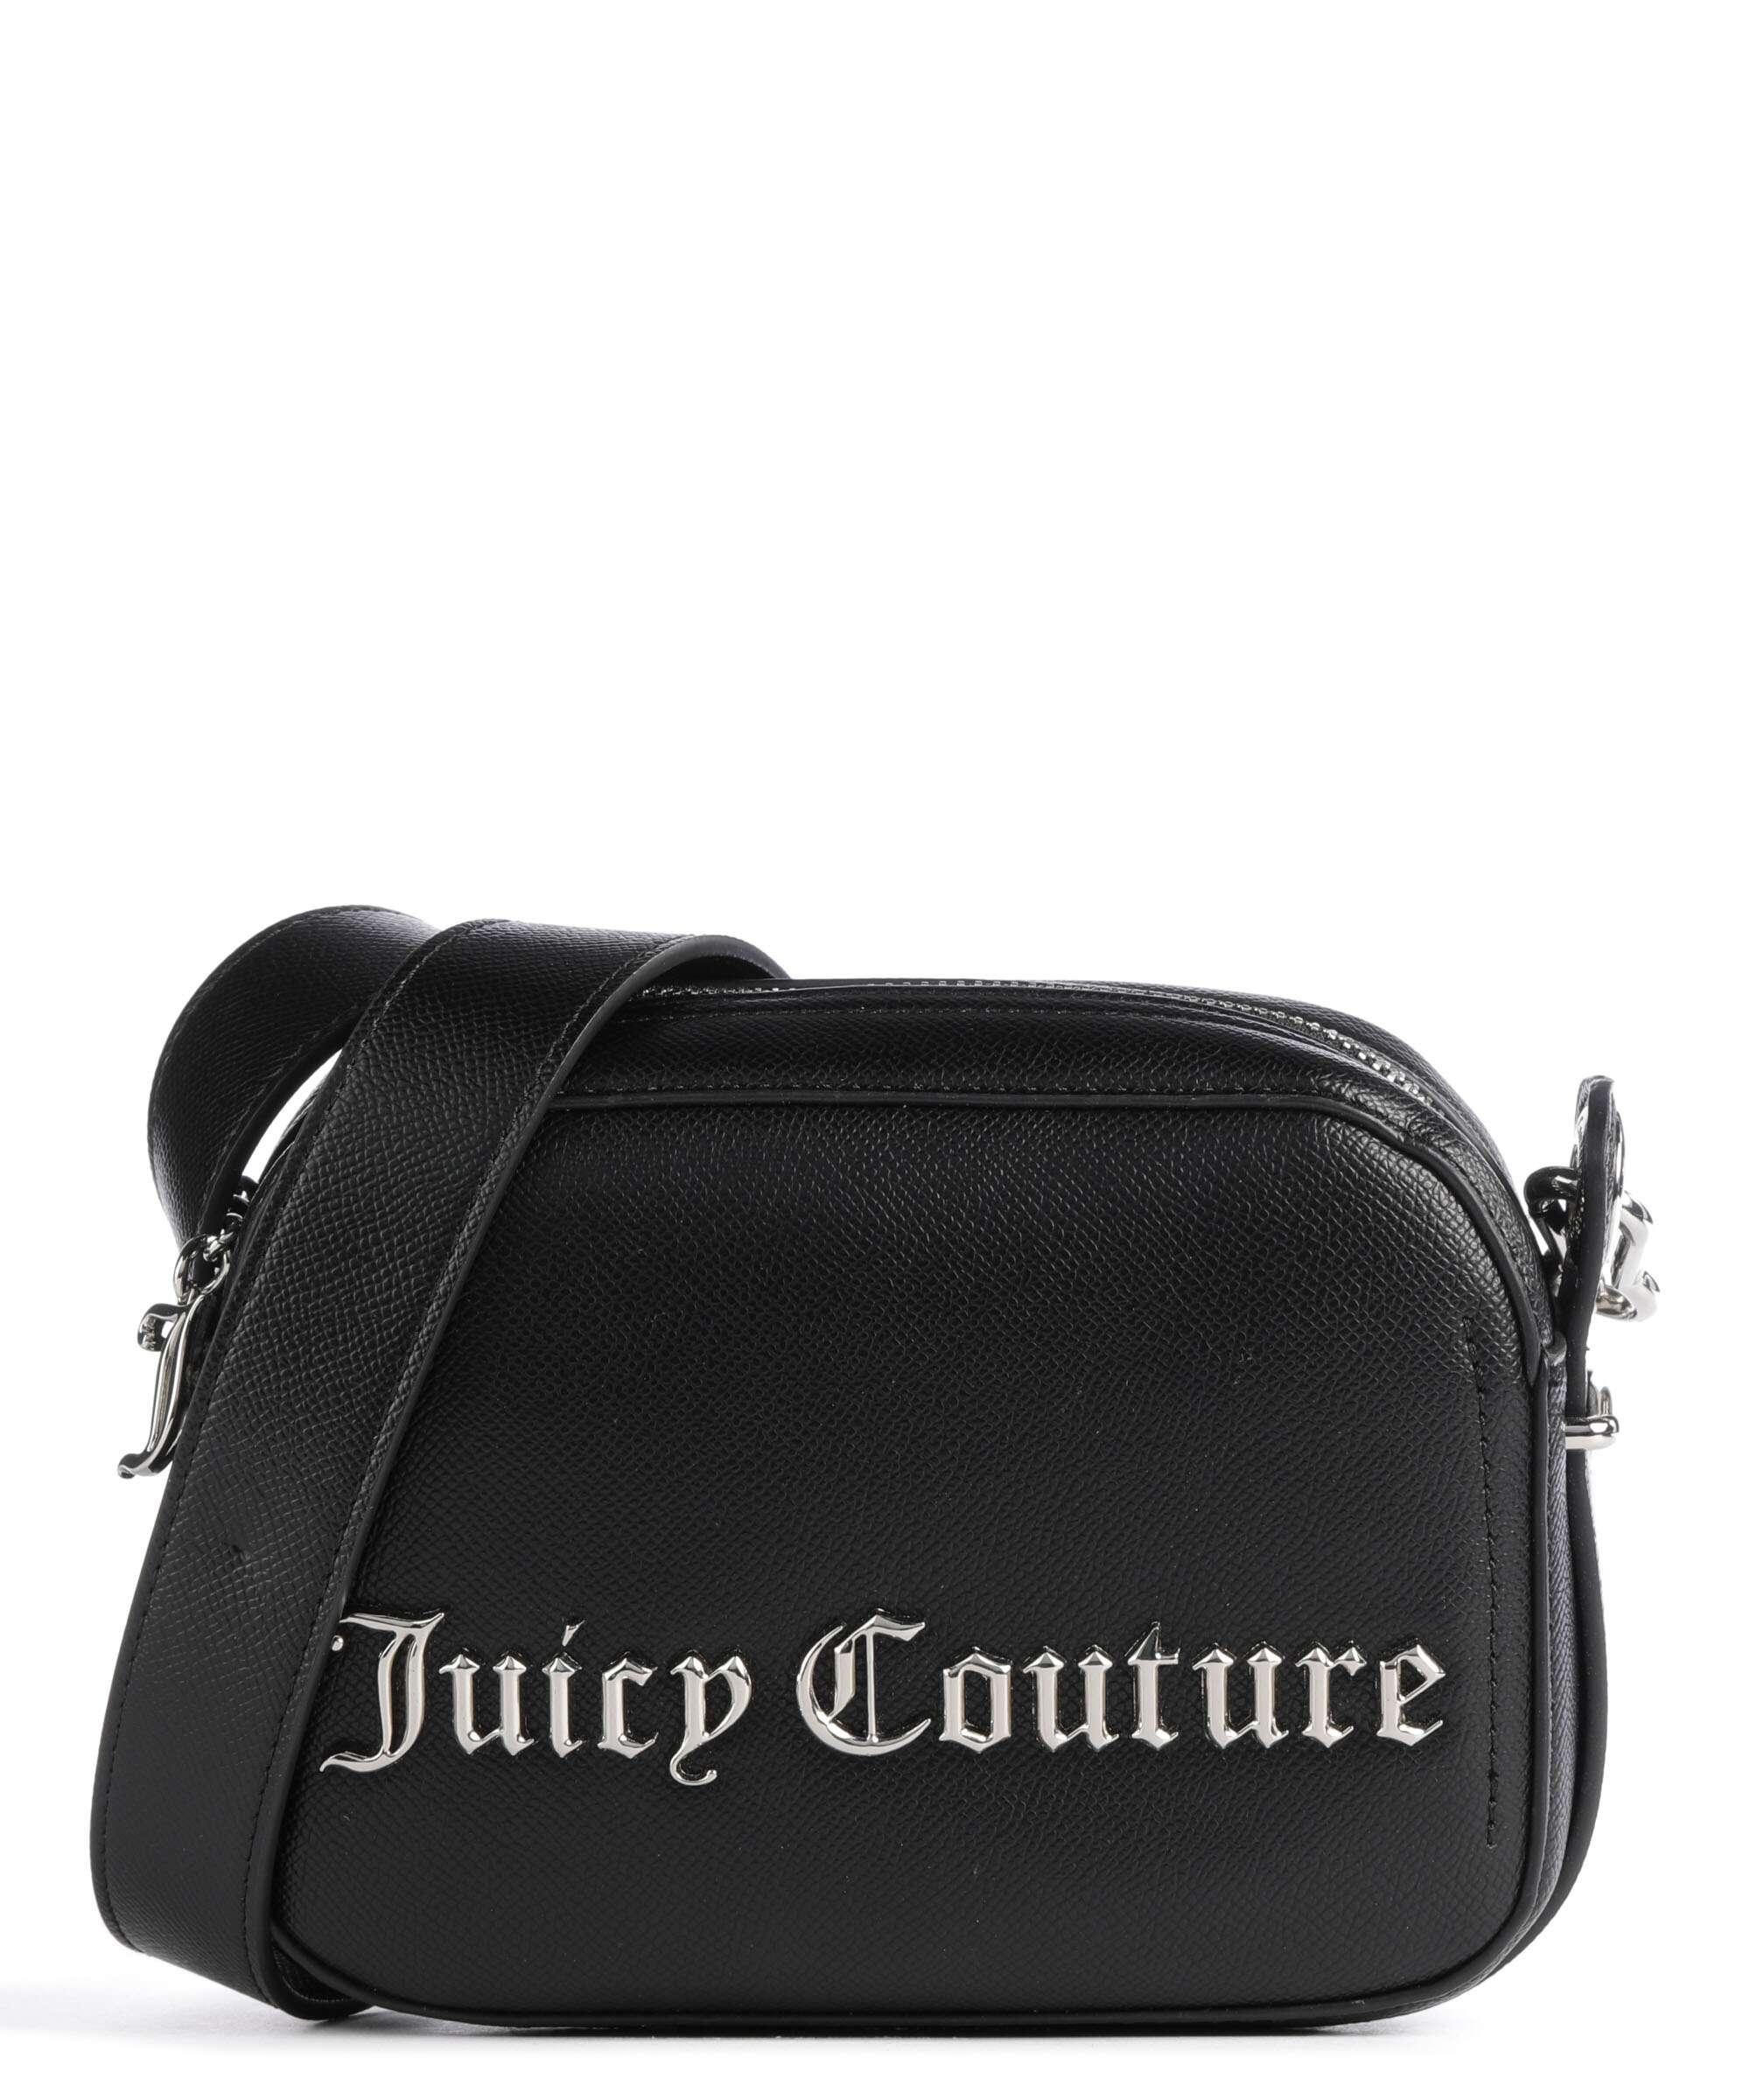 NWT JUICY COUTURE Purse / Bag $117.50 - PicClick